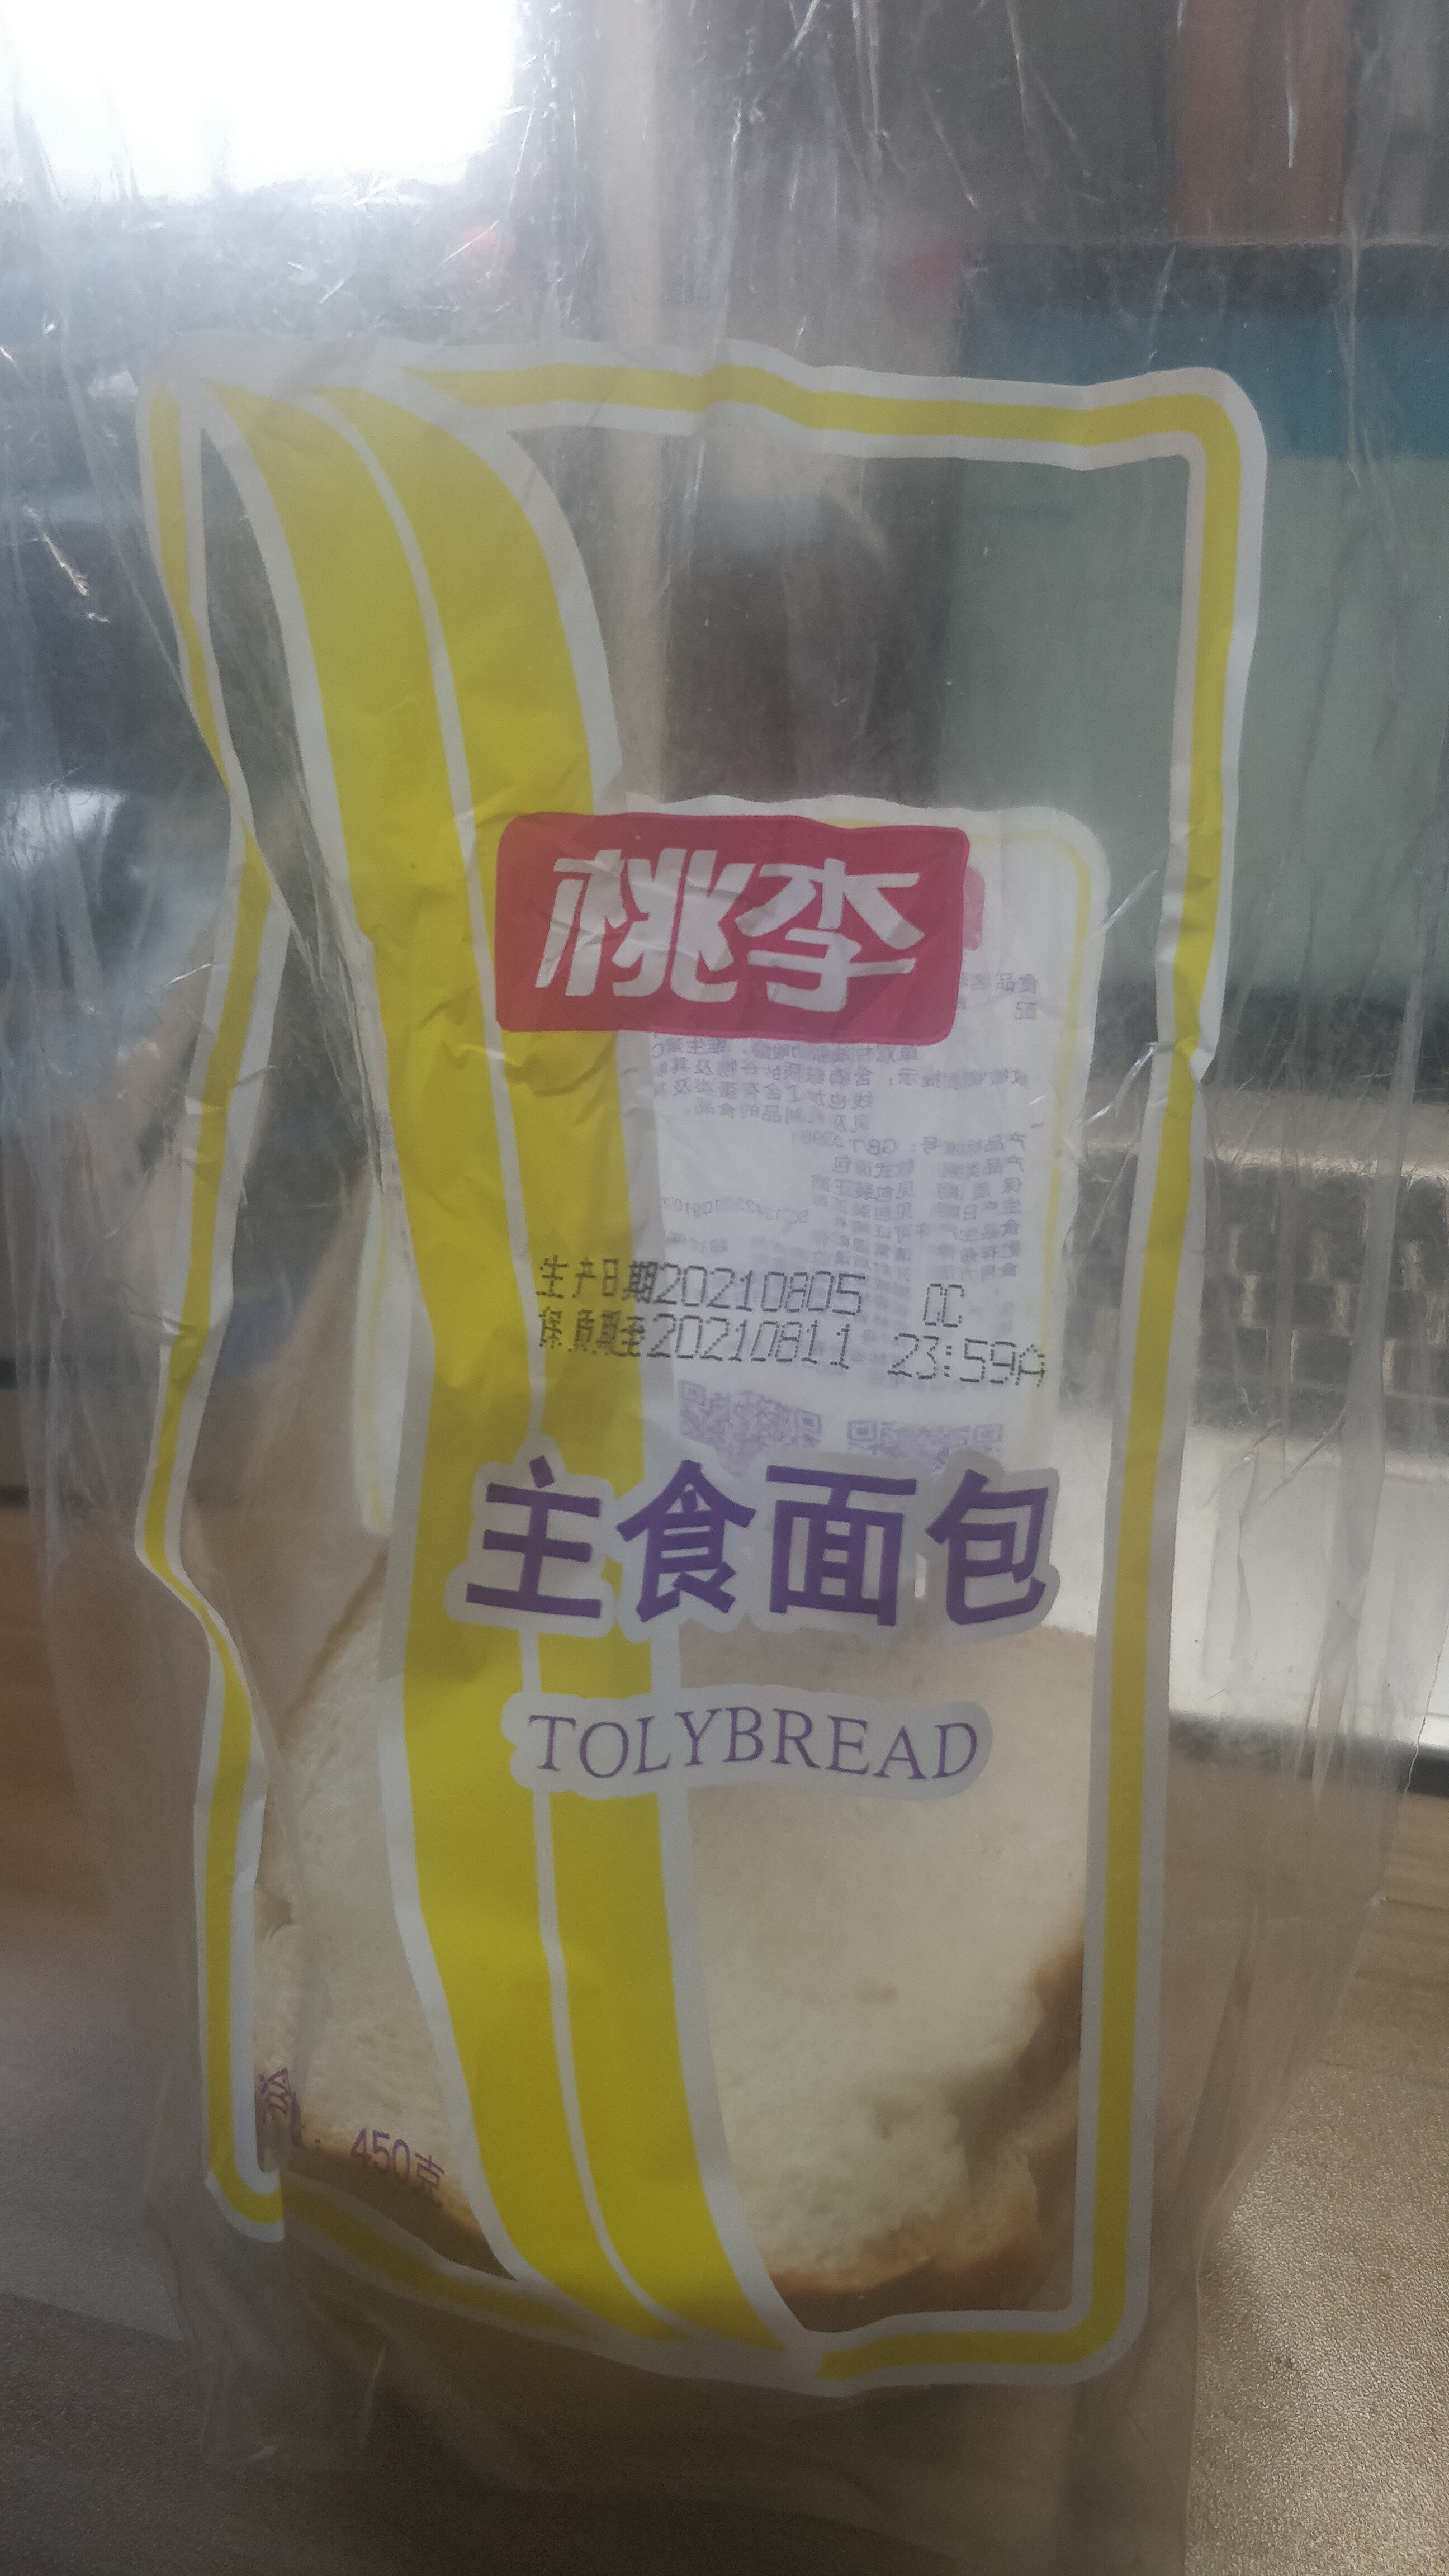 主食面包 - 产品 - zh